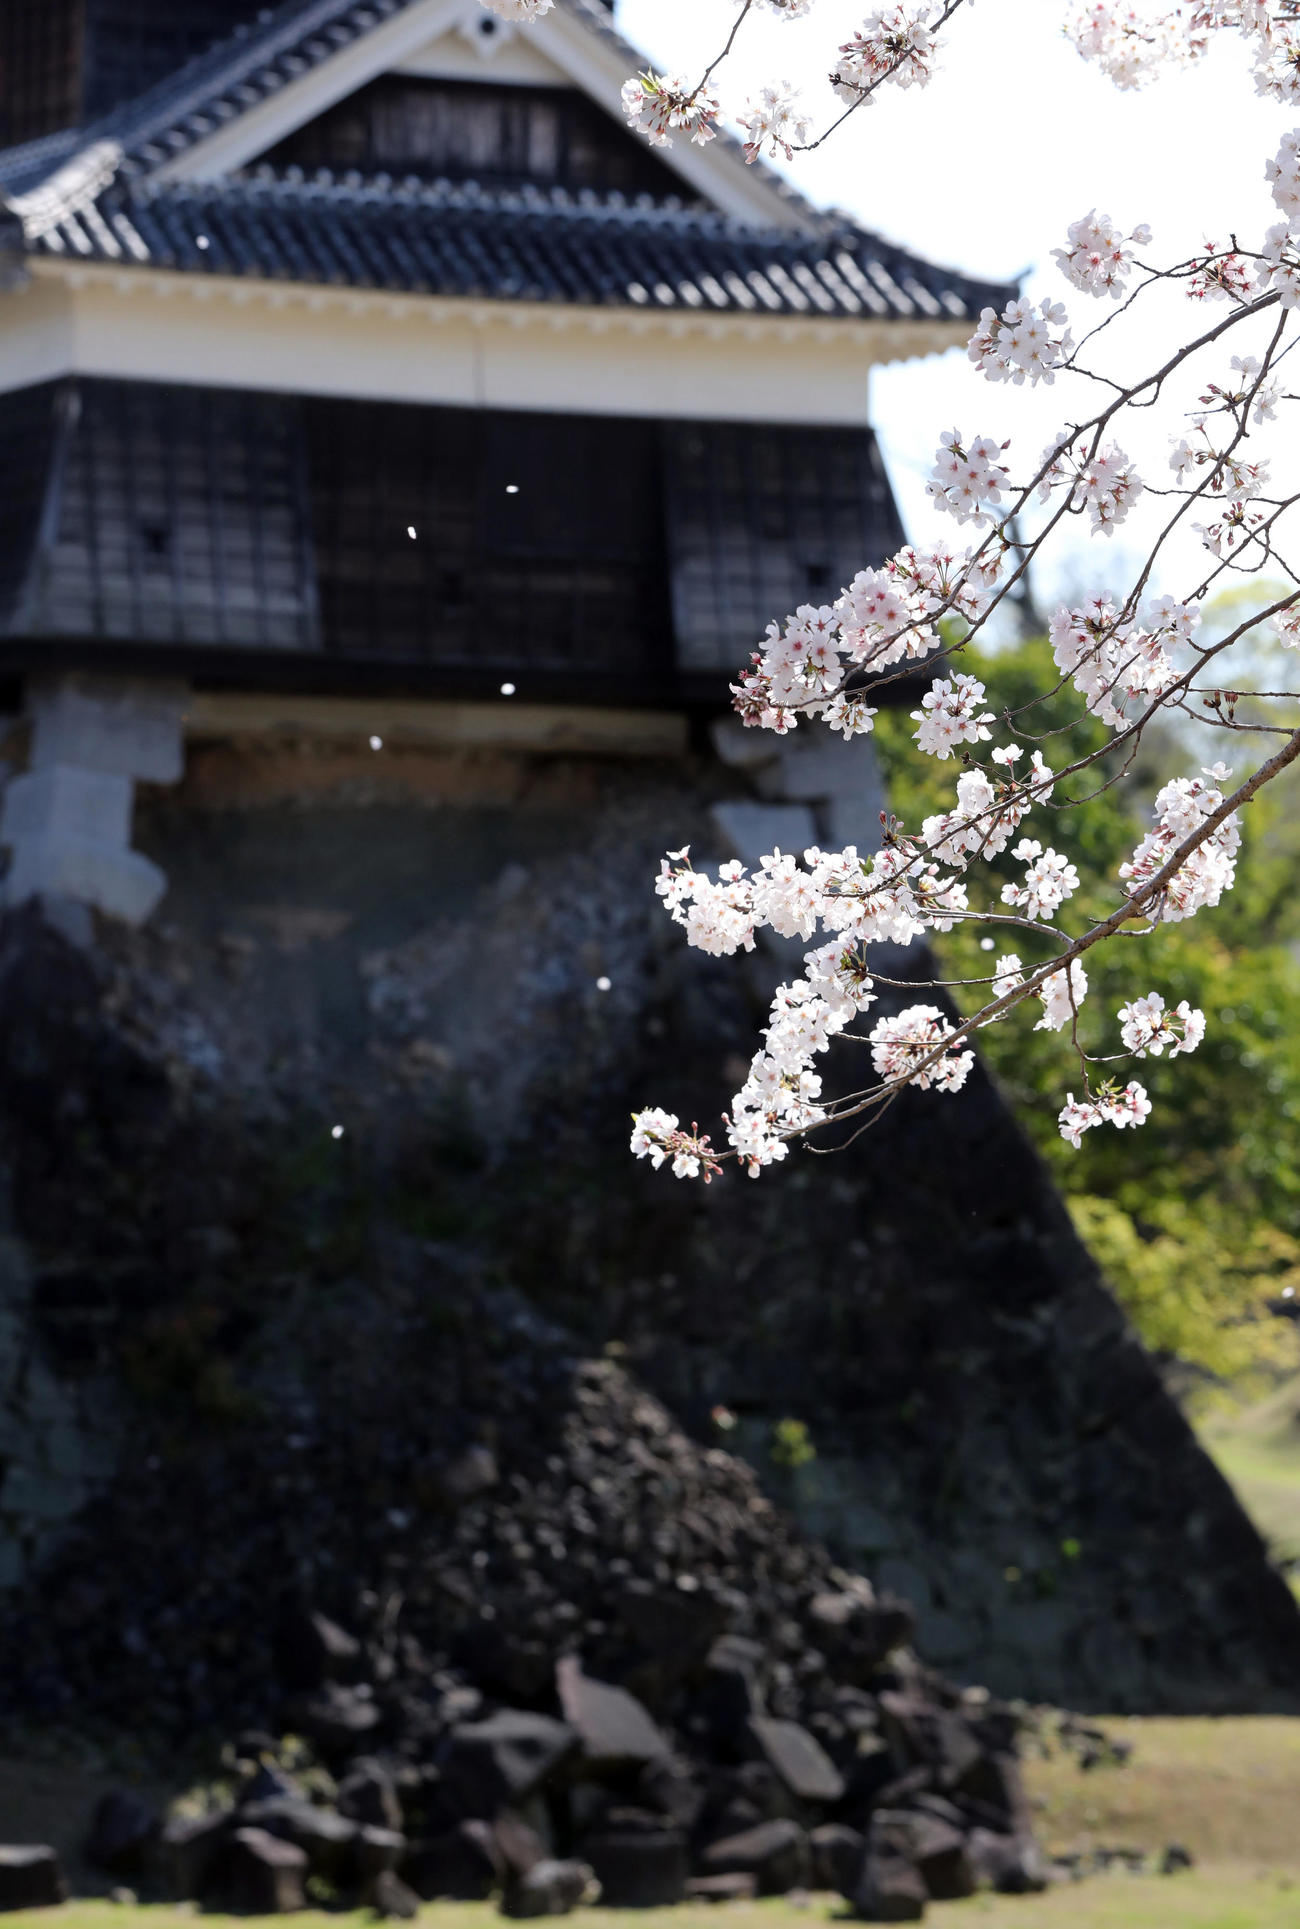 復興作業続く熊本城の戌亥櫓を背に力強く咲き誇る桜（撮影・垰建太）